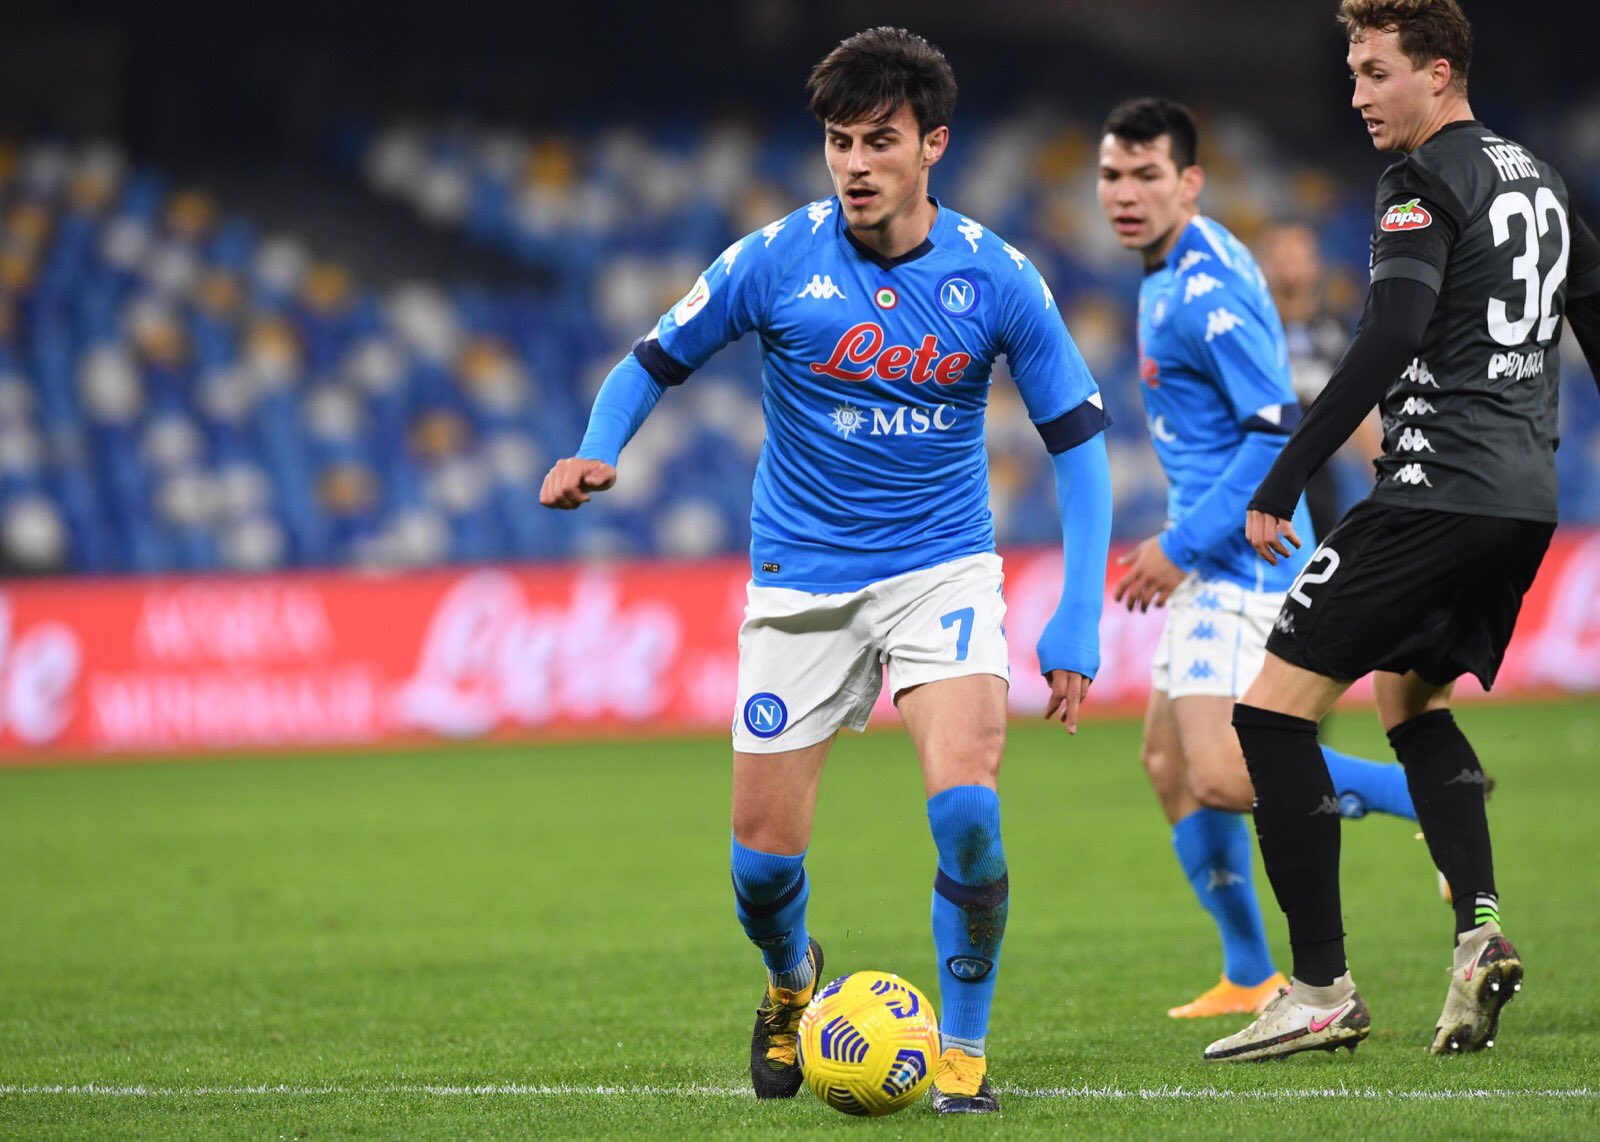 CorSport: Udinese-Napoli, Elmas e Lozano in vantaggio su Ounas e Politano. Torna Mario Rui